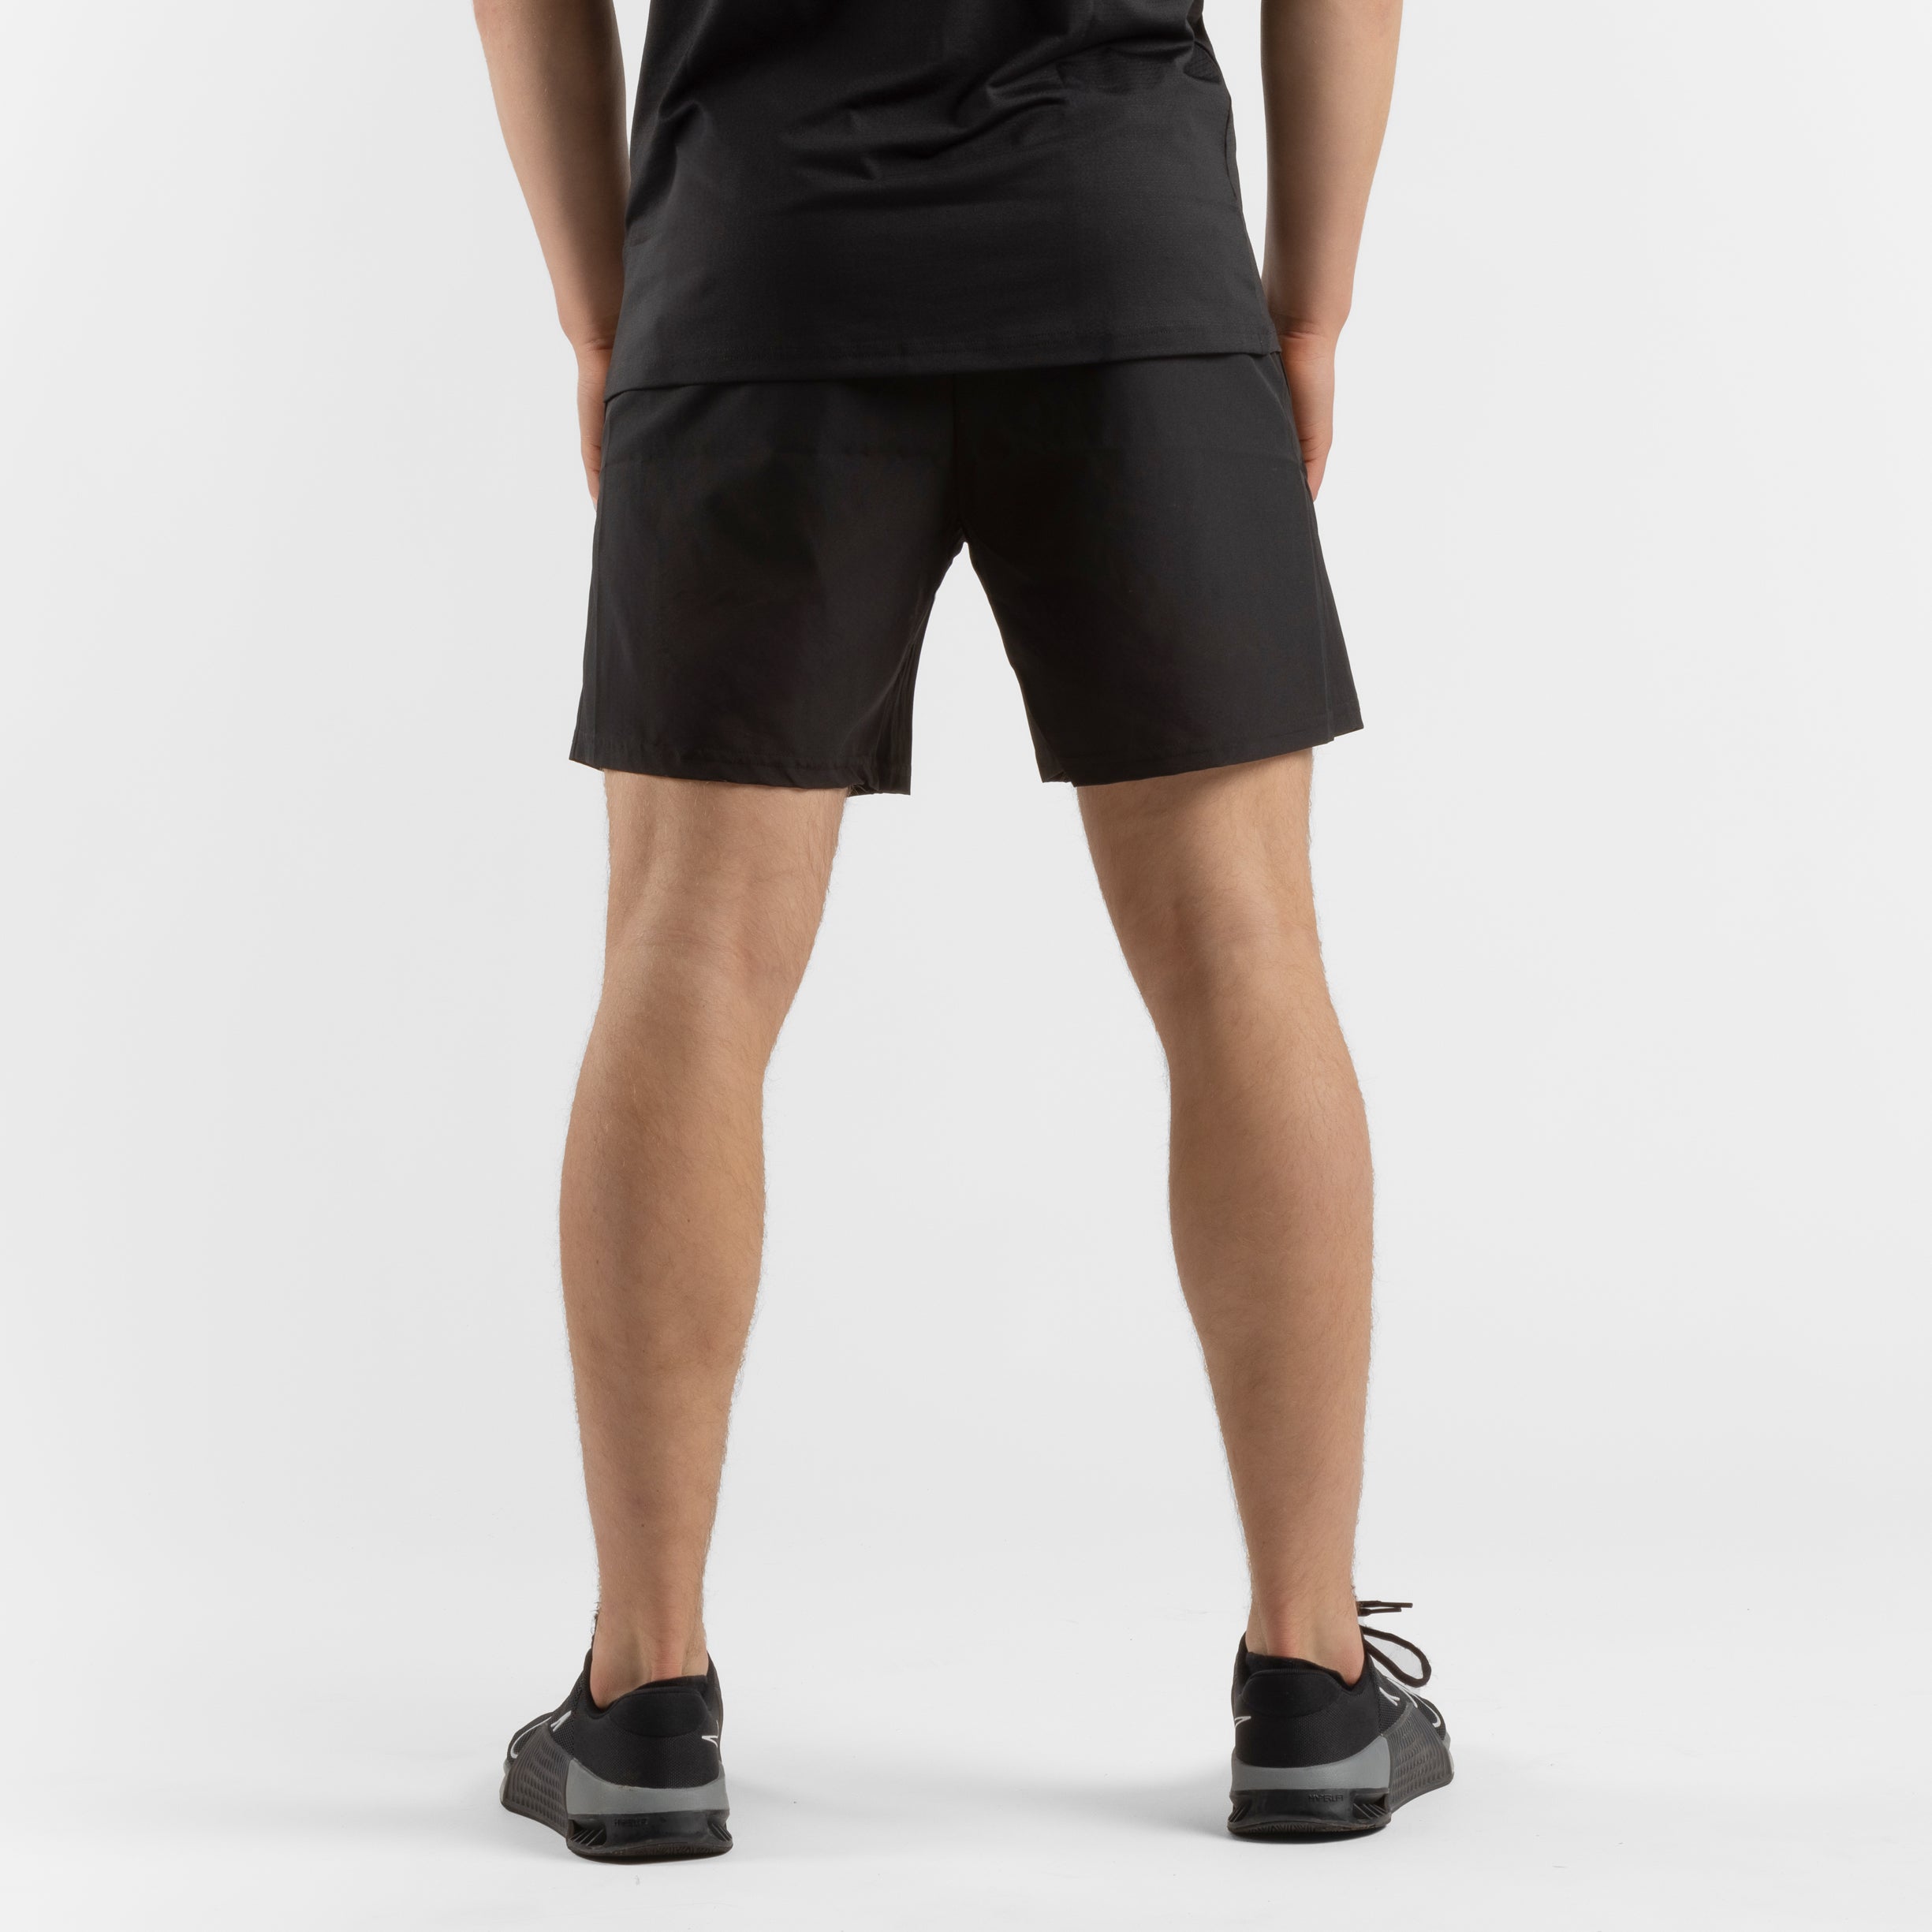 ZEUZ Sport Shorts - Hosen